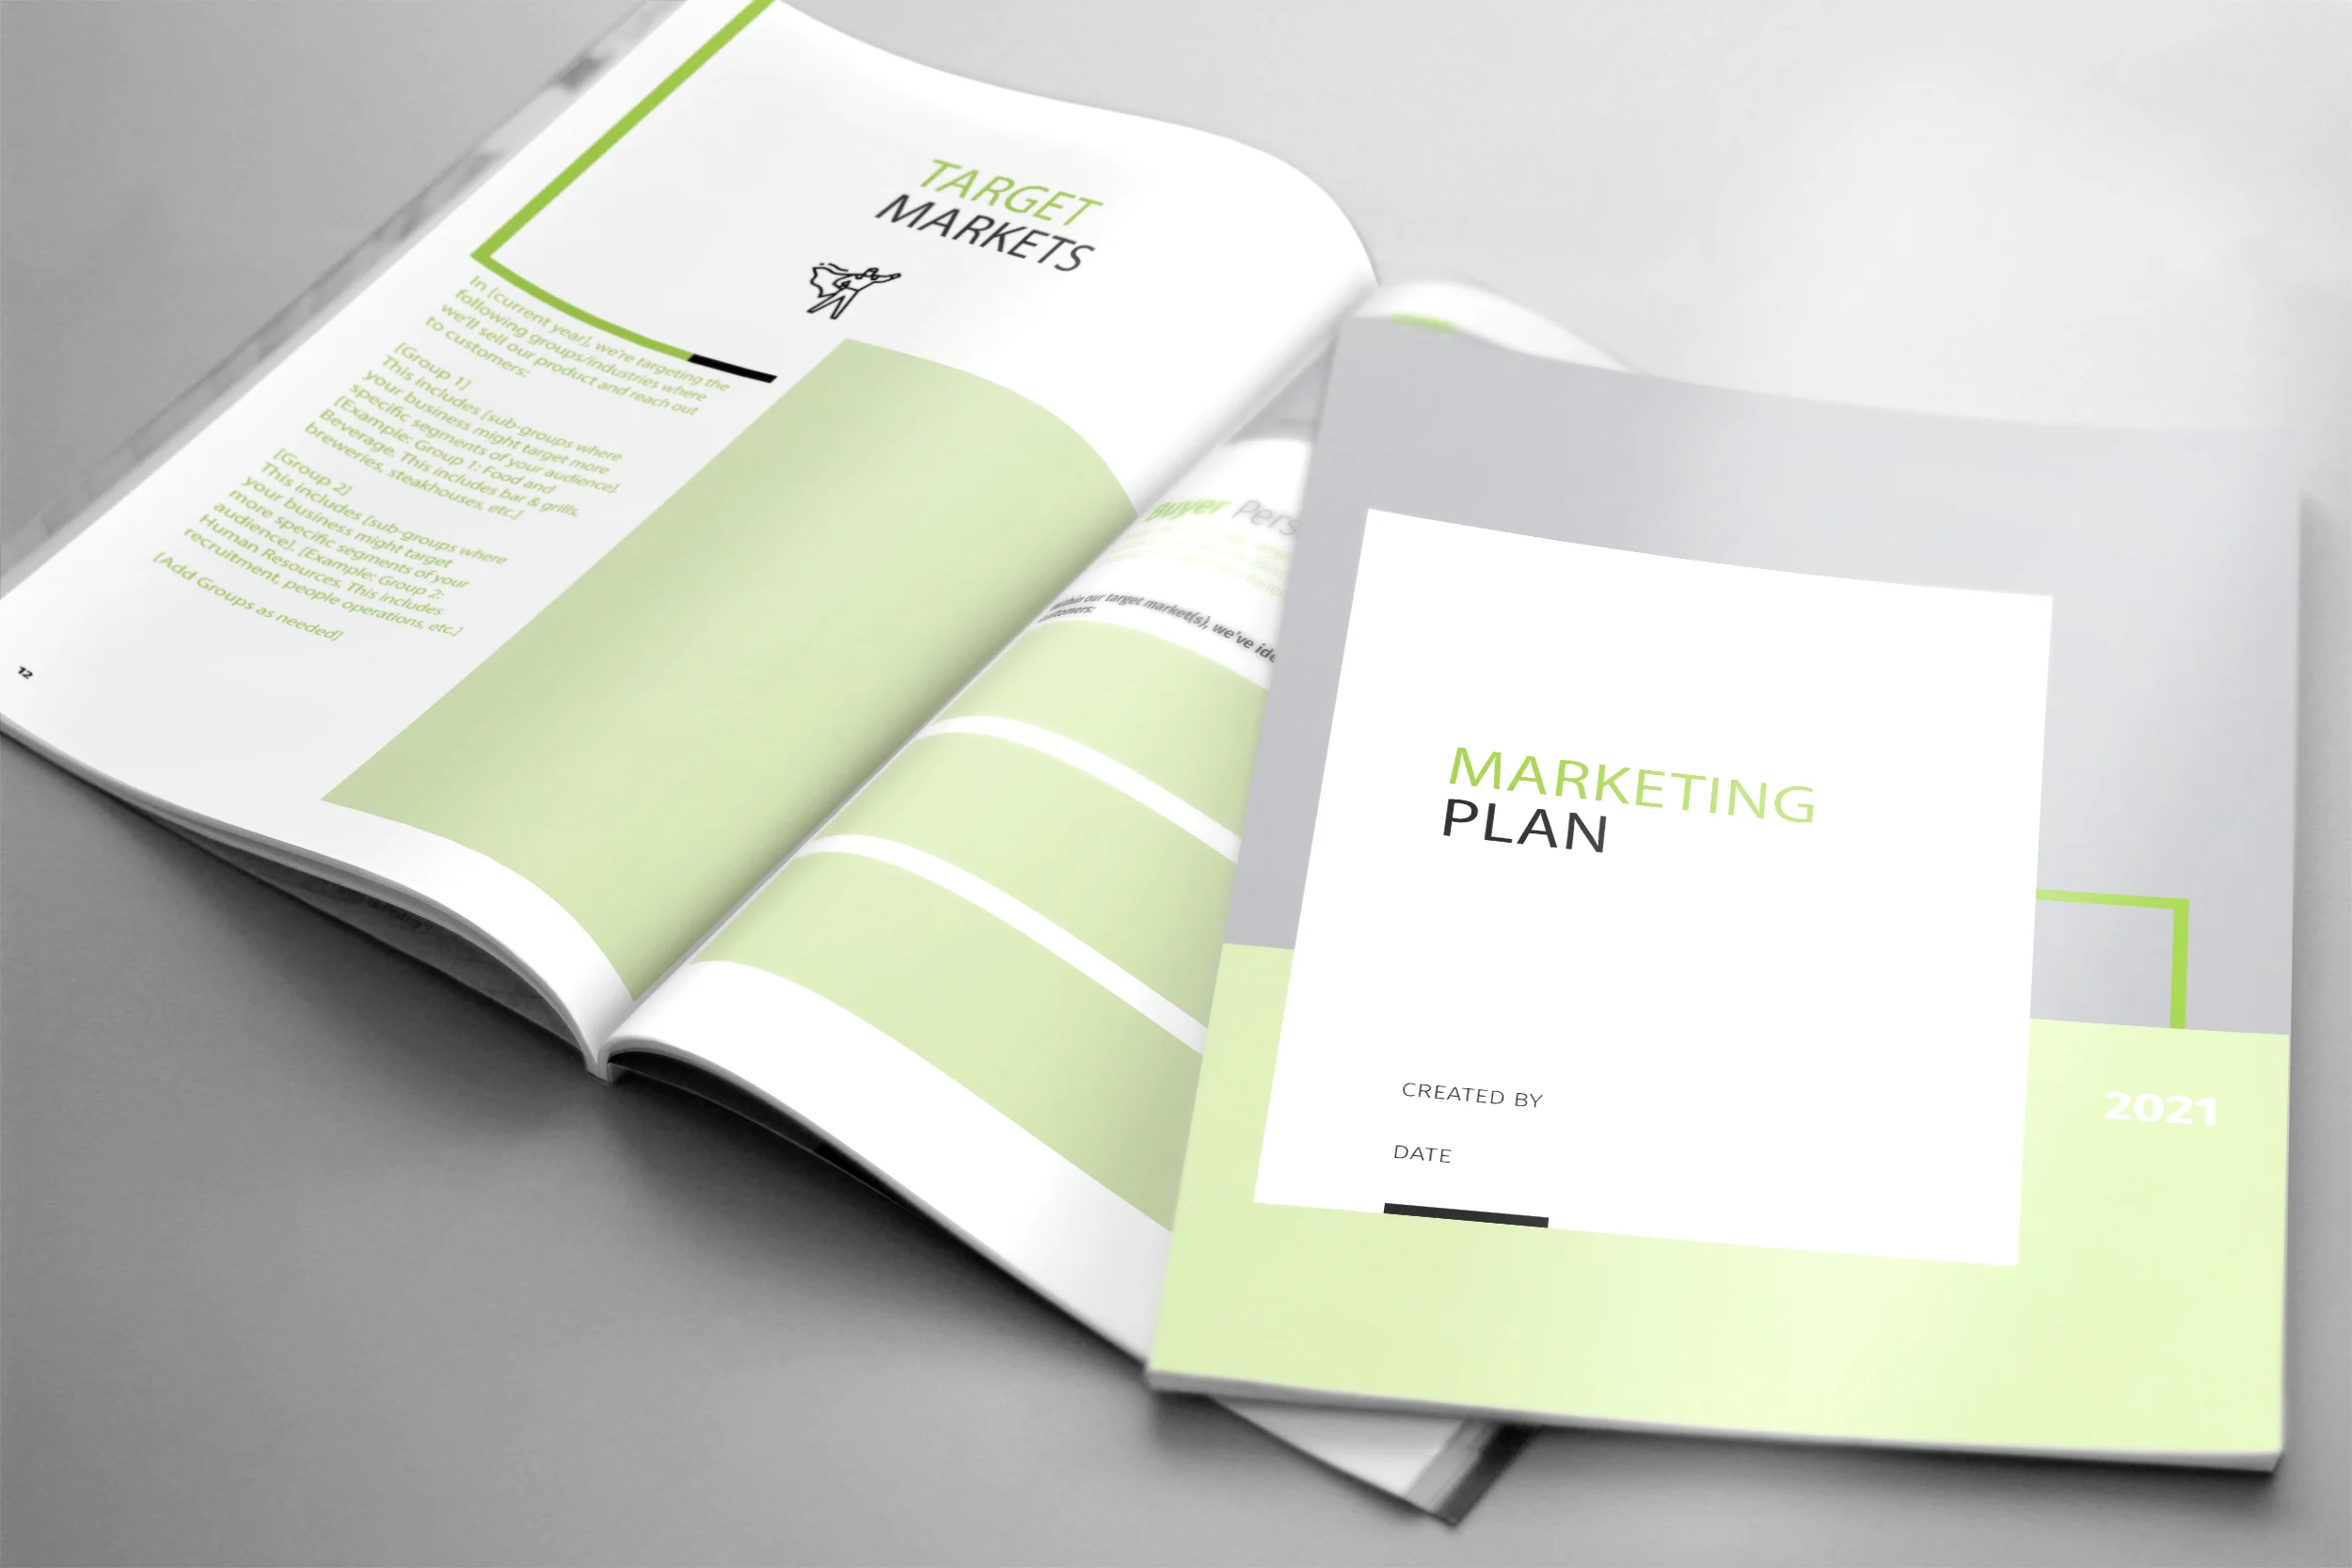 Marketing Plan workbook